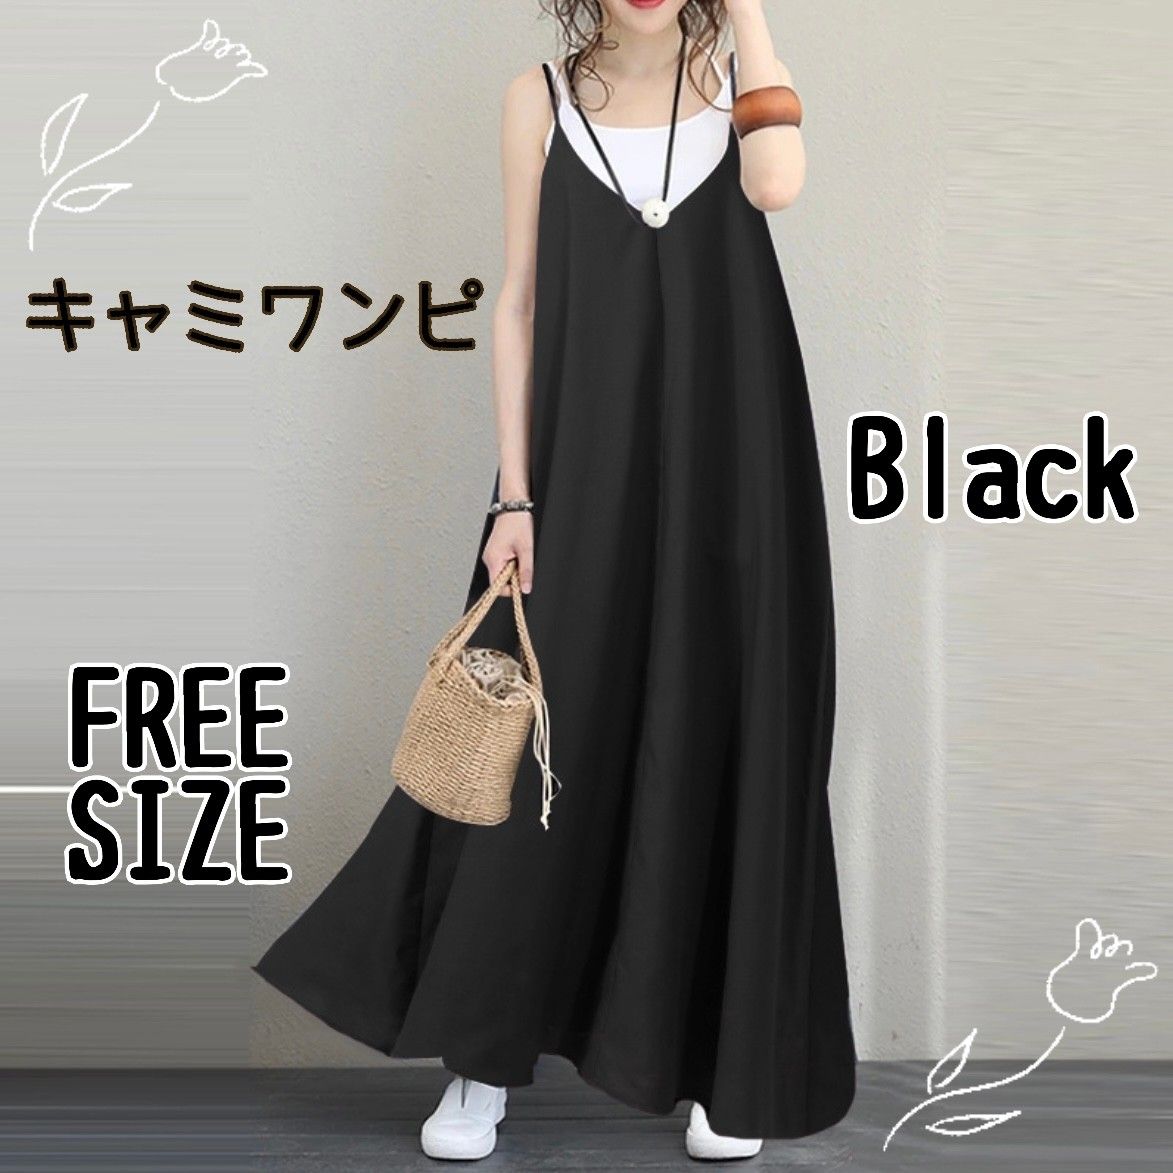 キャミ ロングワンピース スカート キャミワンピース 夏 韓国 シンプル ブラック 黒 ゆったり スカート ワンピース